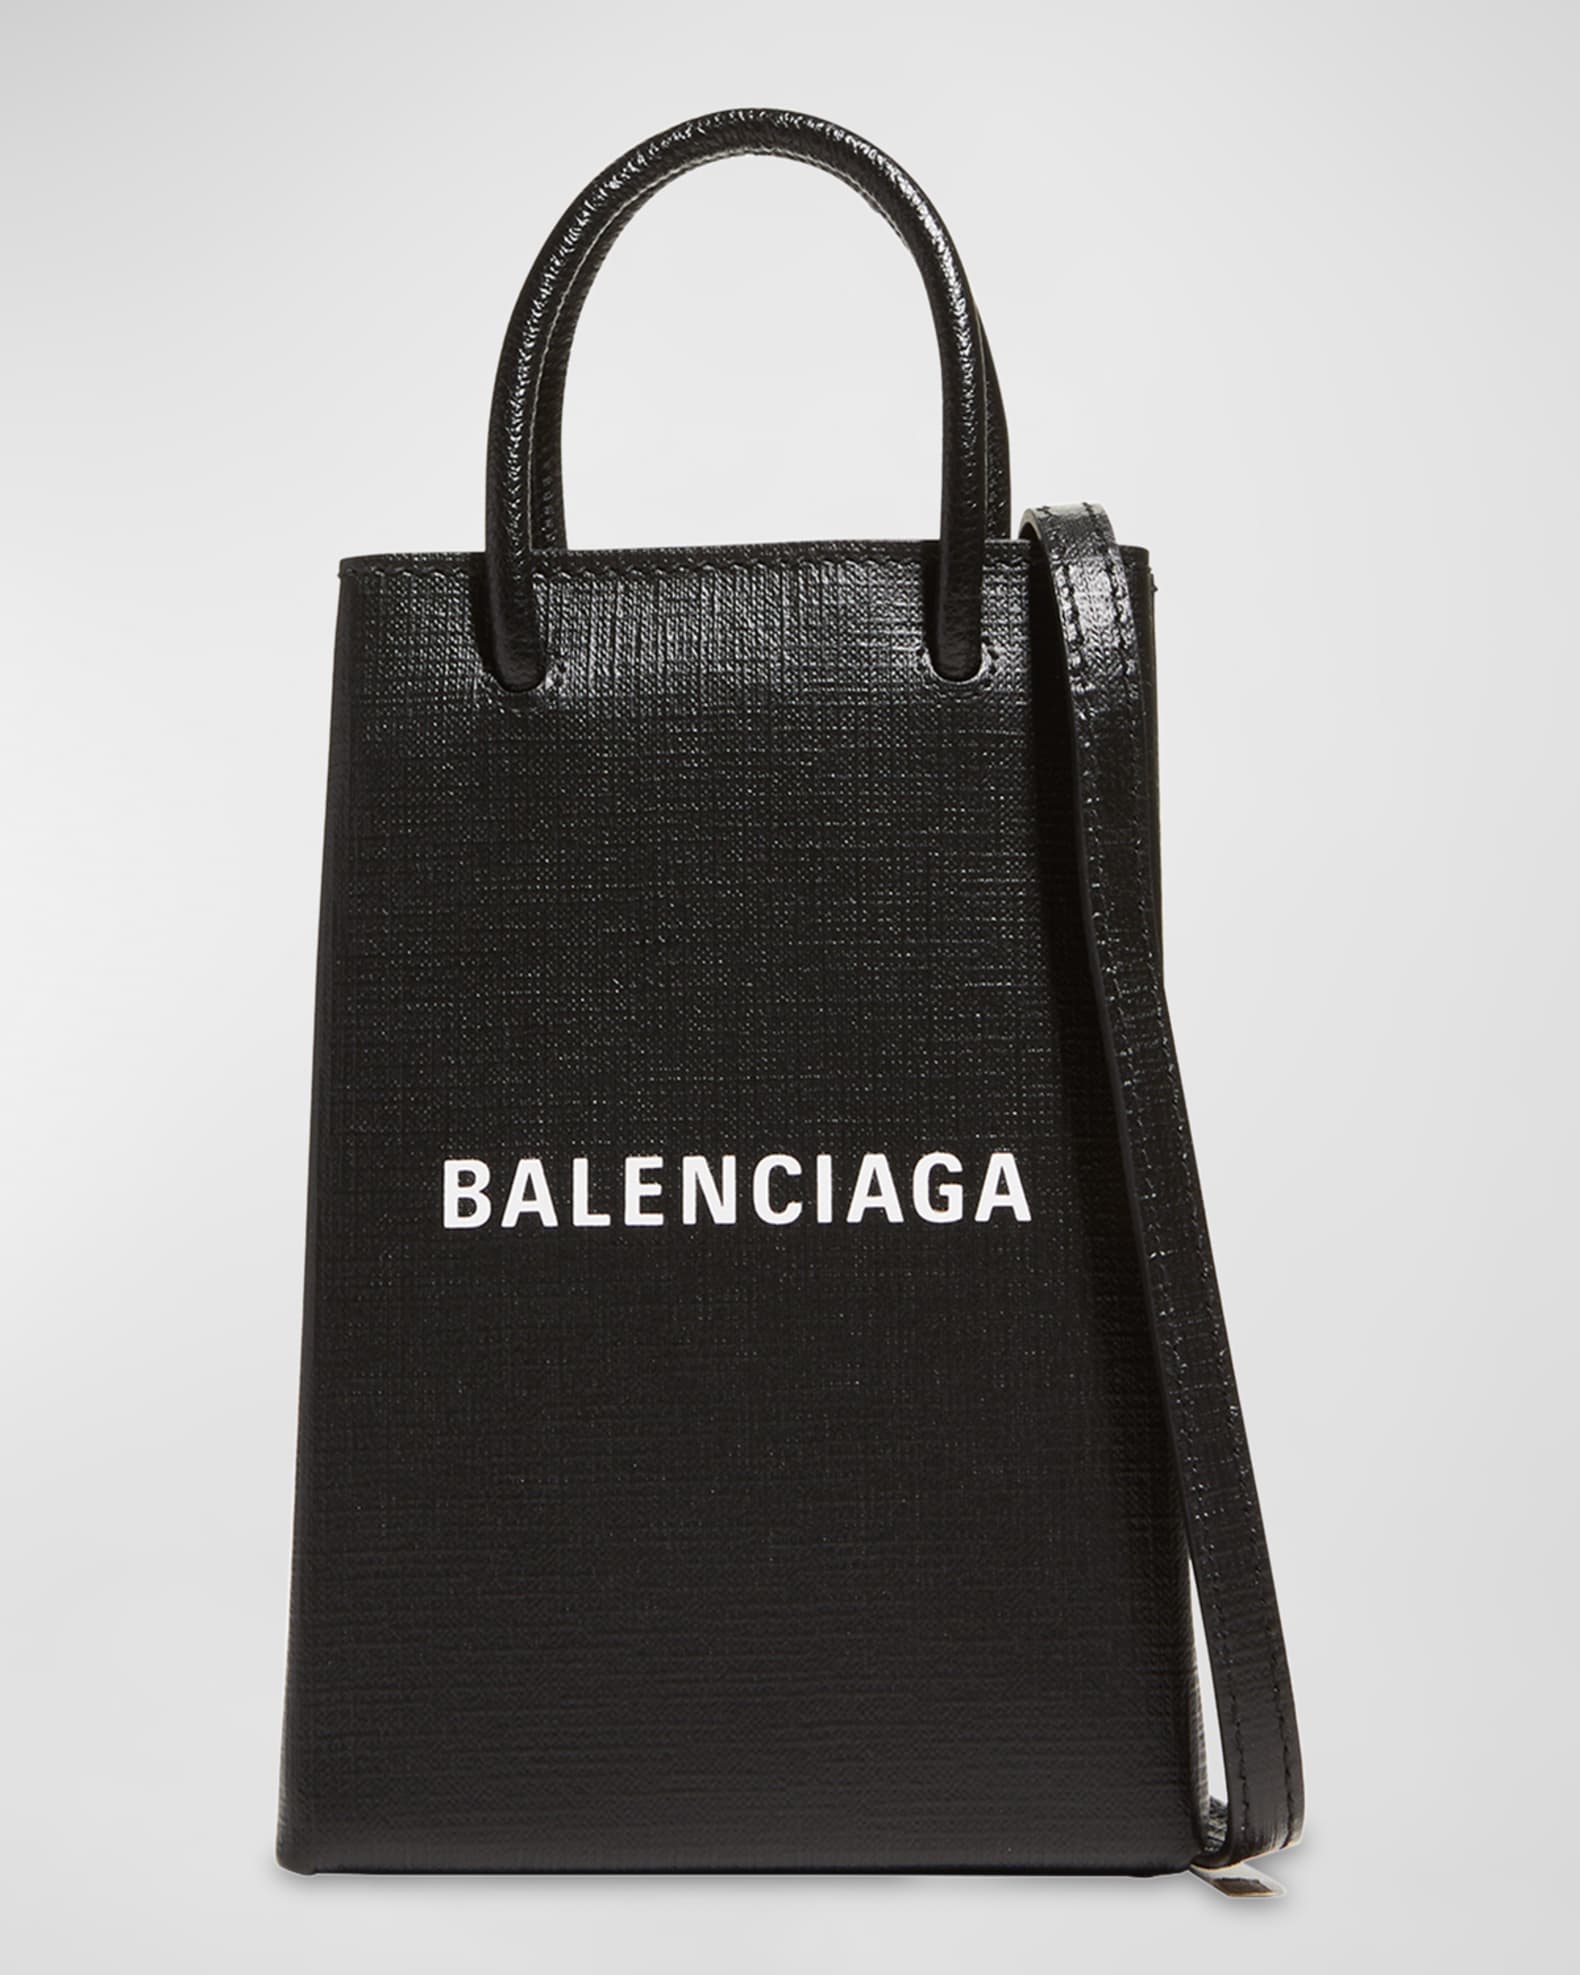 Balenciaga Shopping Phone Holder Bag